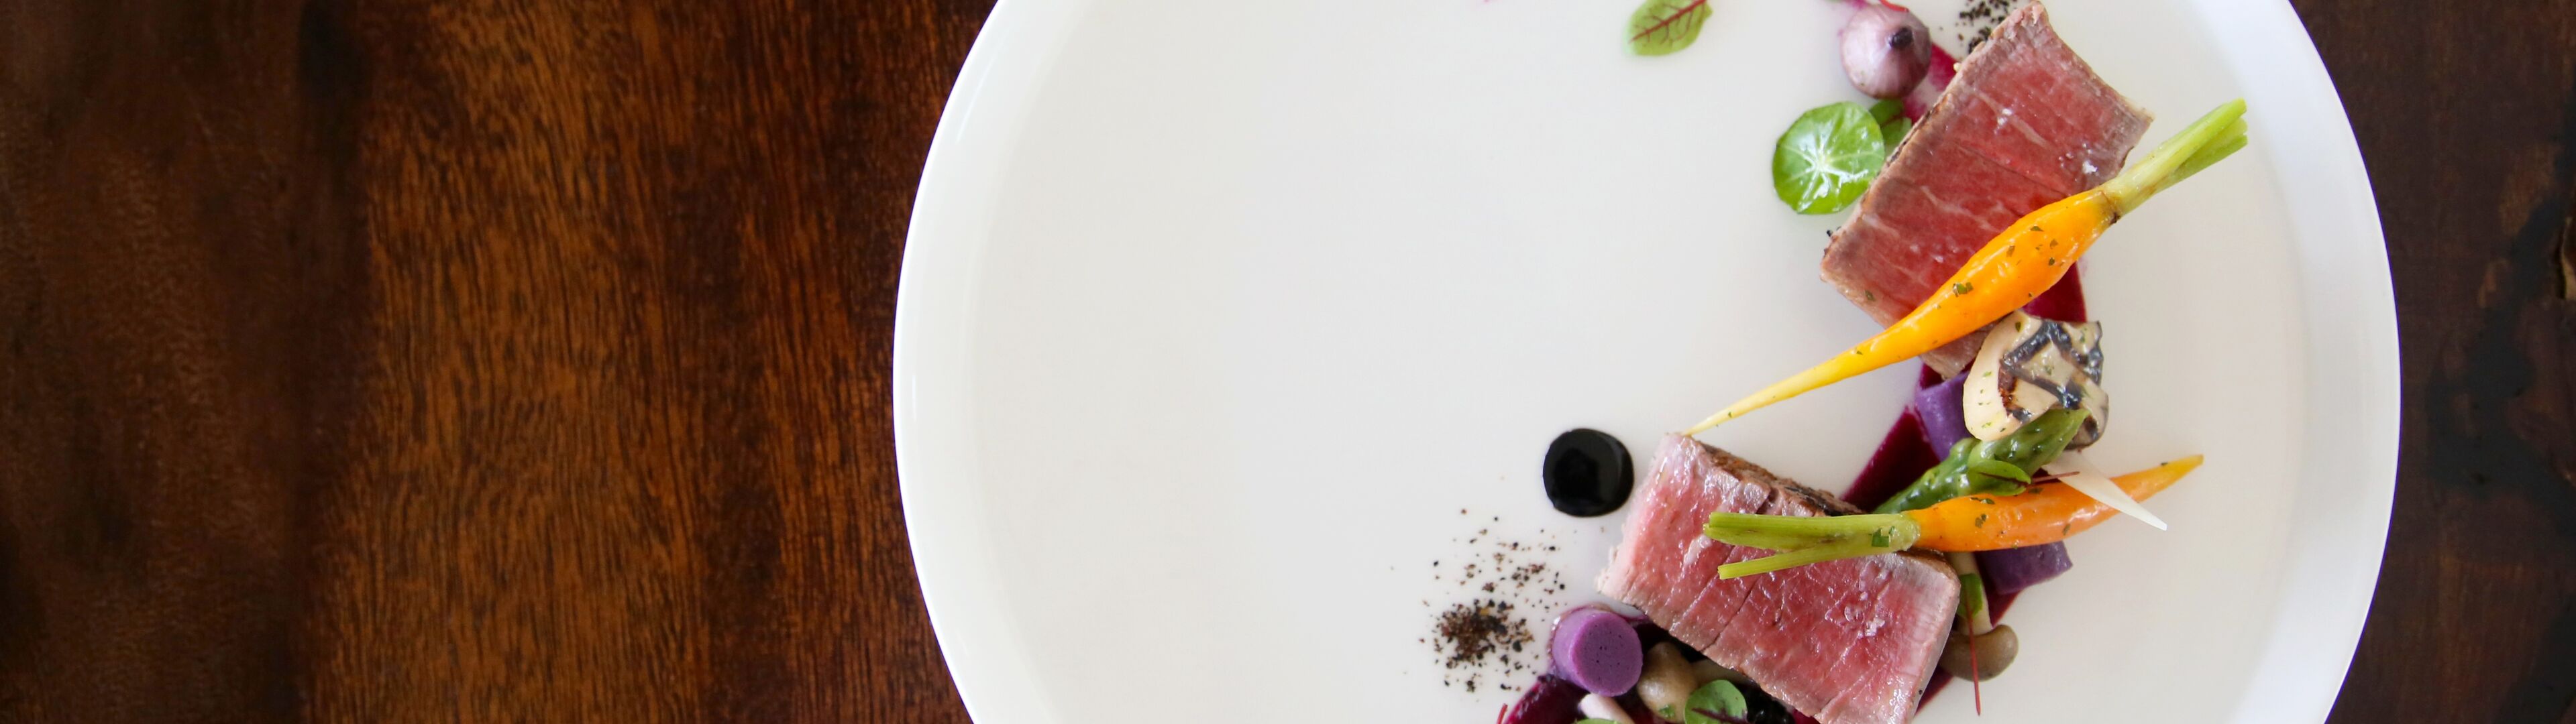 Présentation artistique de thon poêlé avec garnitures de légumes colorés sur une assiette blanche immaculée, sur une table en bois foncé.